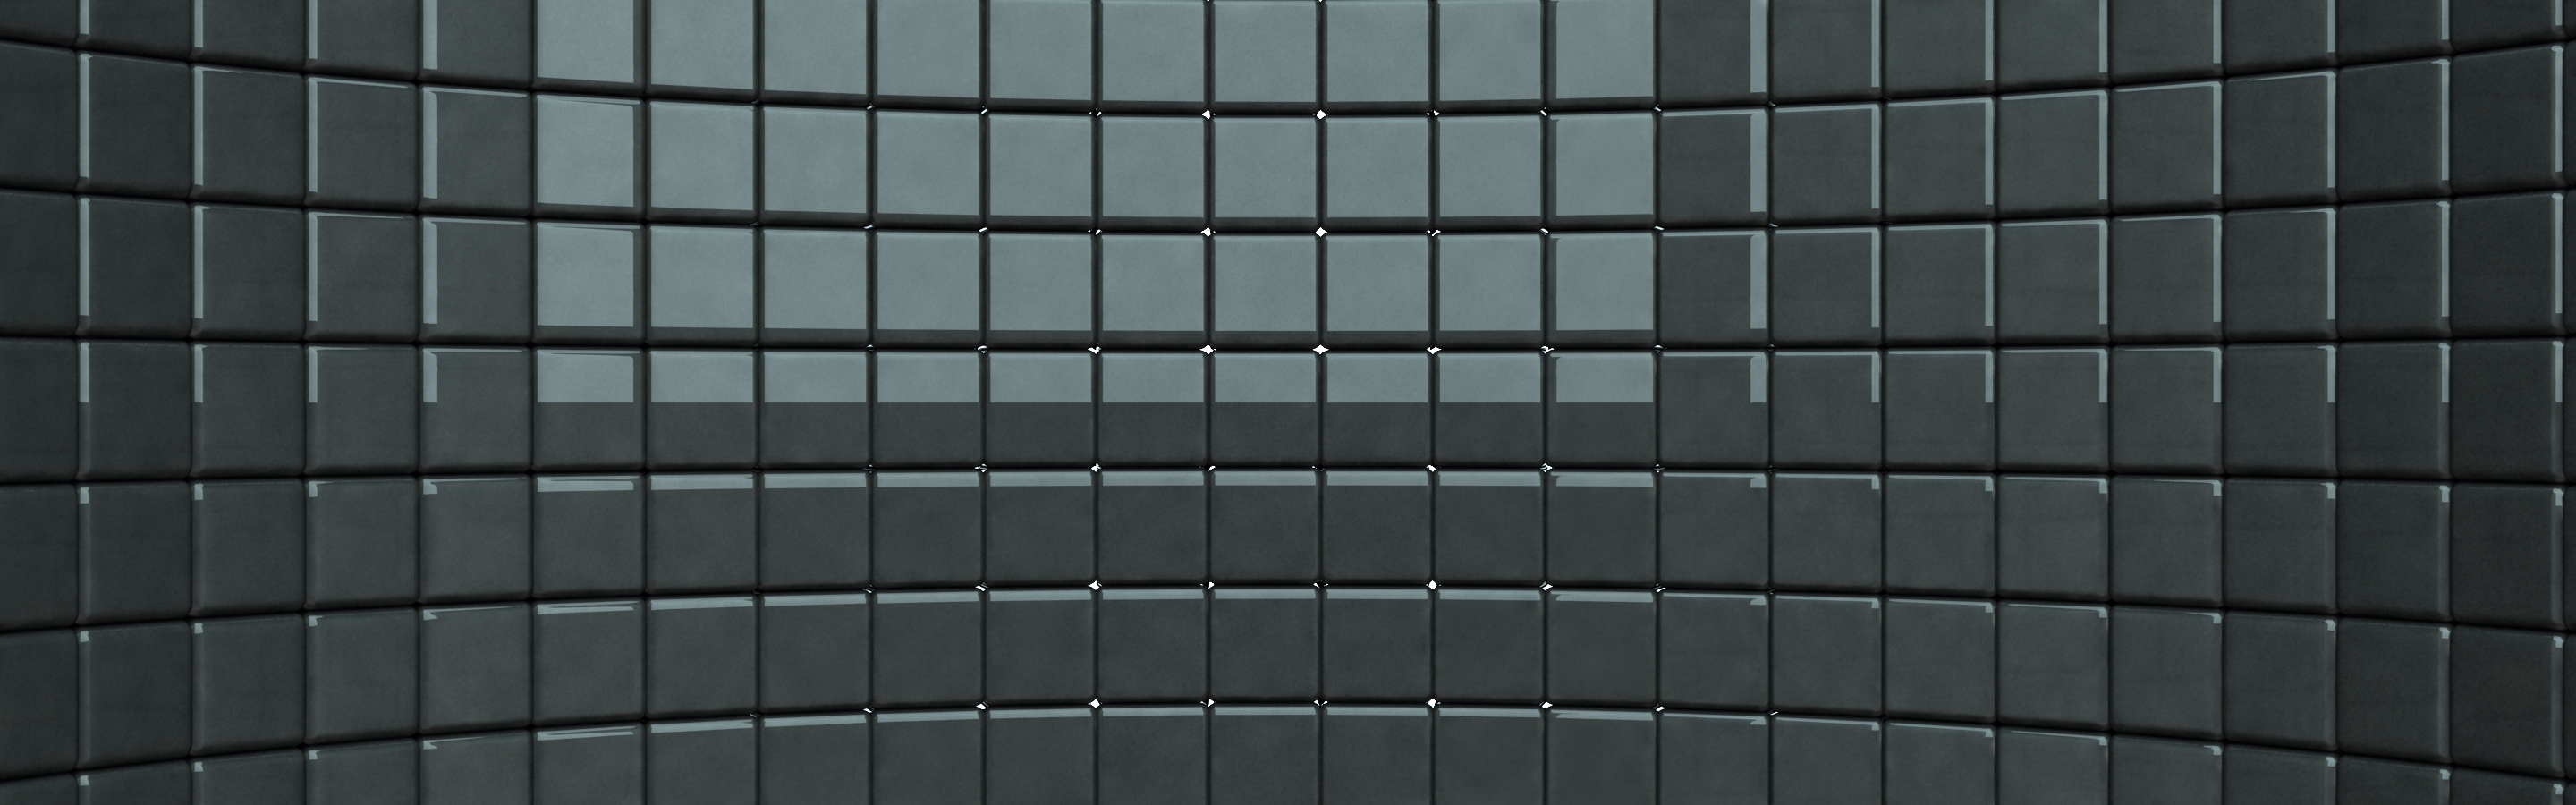 Dual Monitor Bricks Abstract